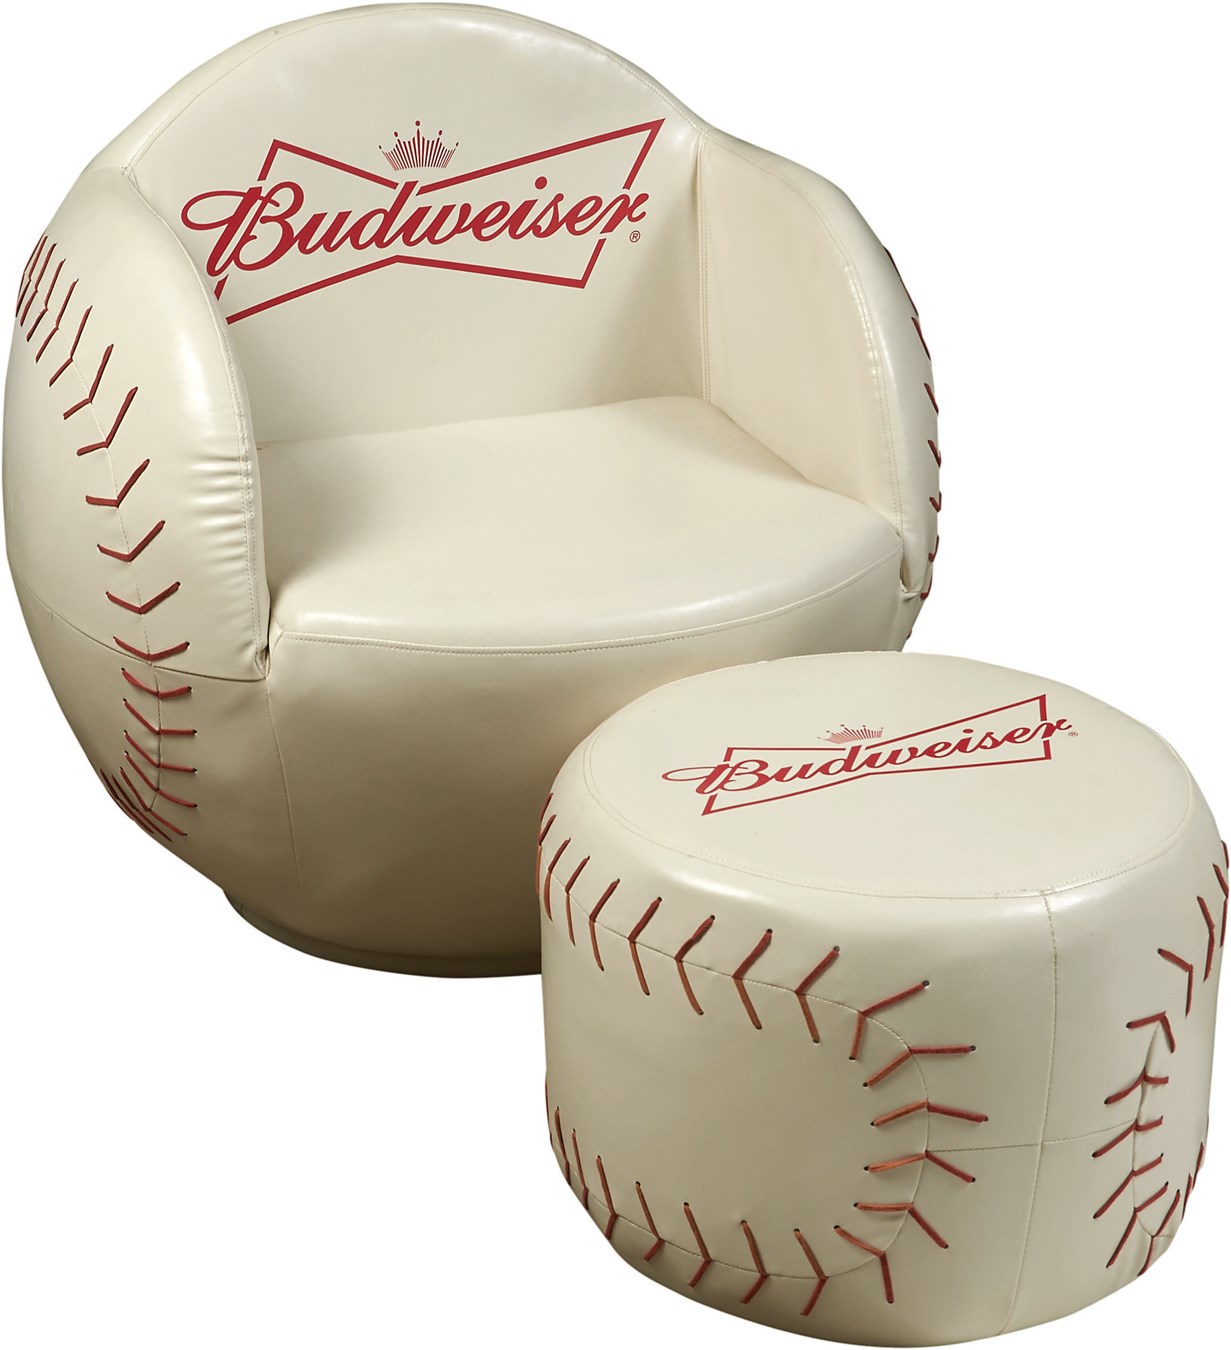 Baseball Memorabilia - Budweiser Promotional Baseball Chair and Ottoman